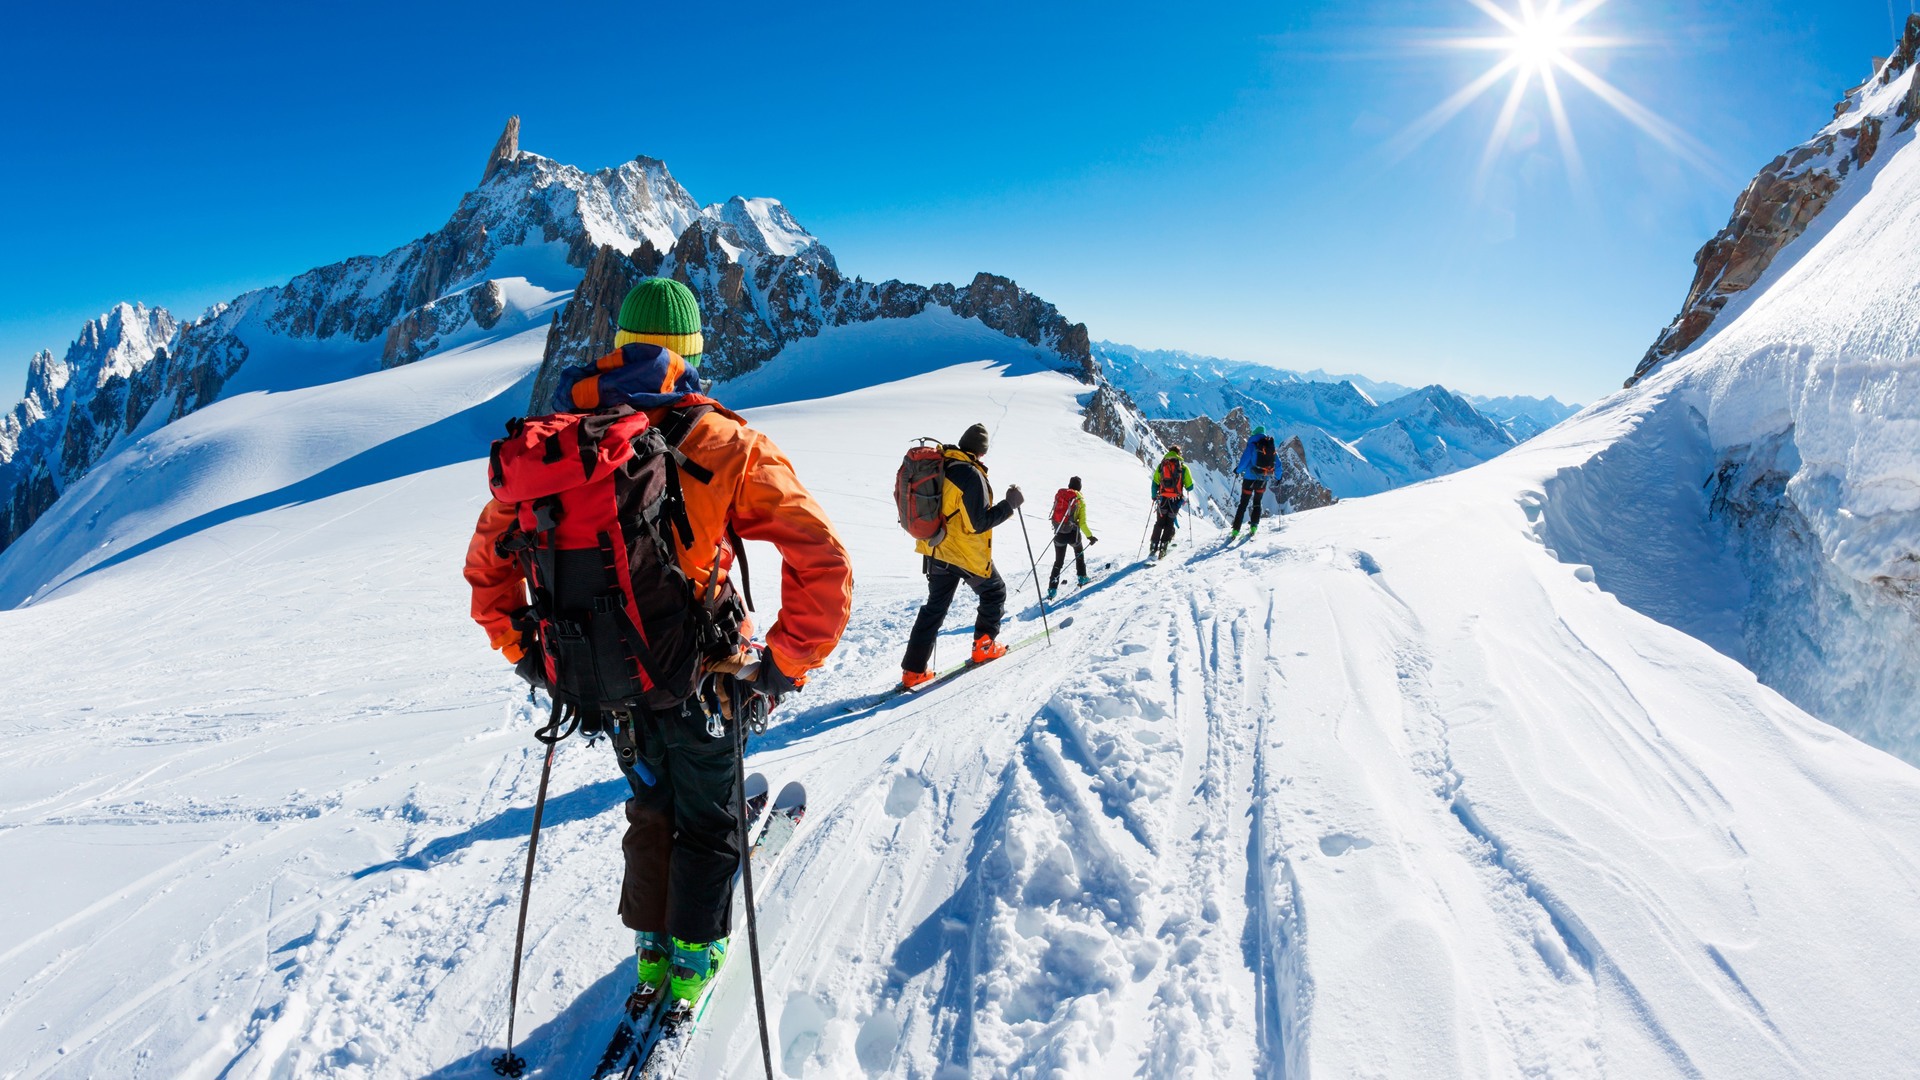 Descubre más actividades invernales en los Alpes franceses